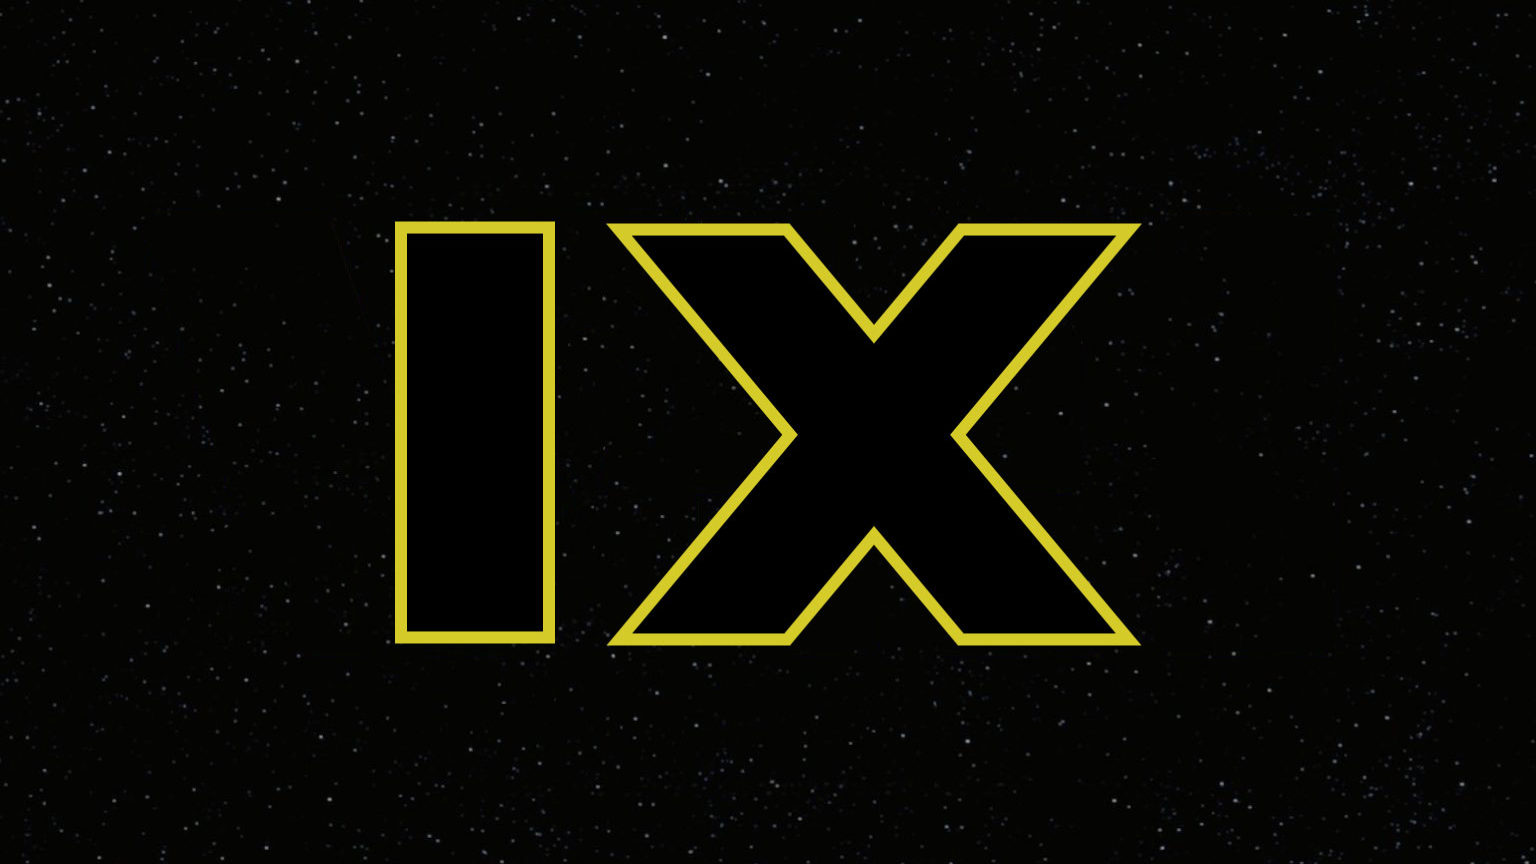 Star_Wars:_Episode_IX